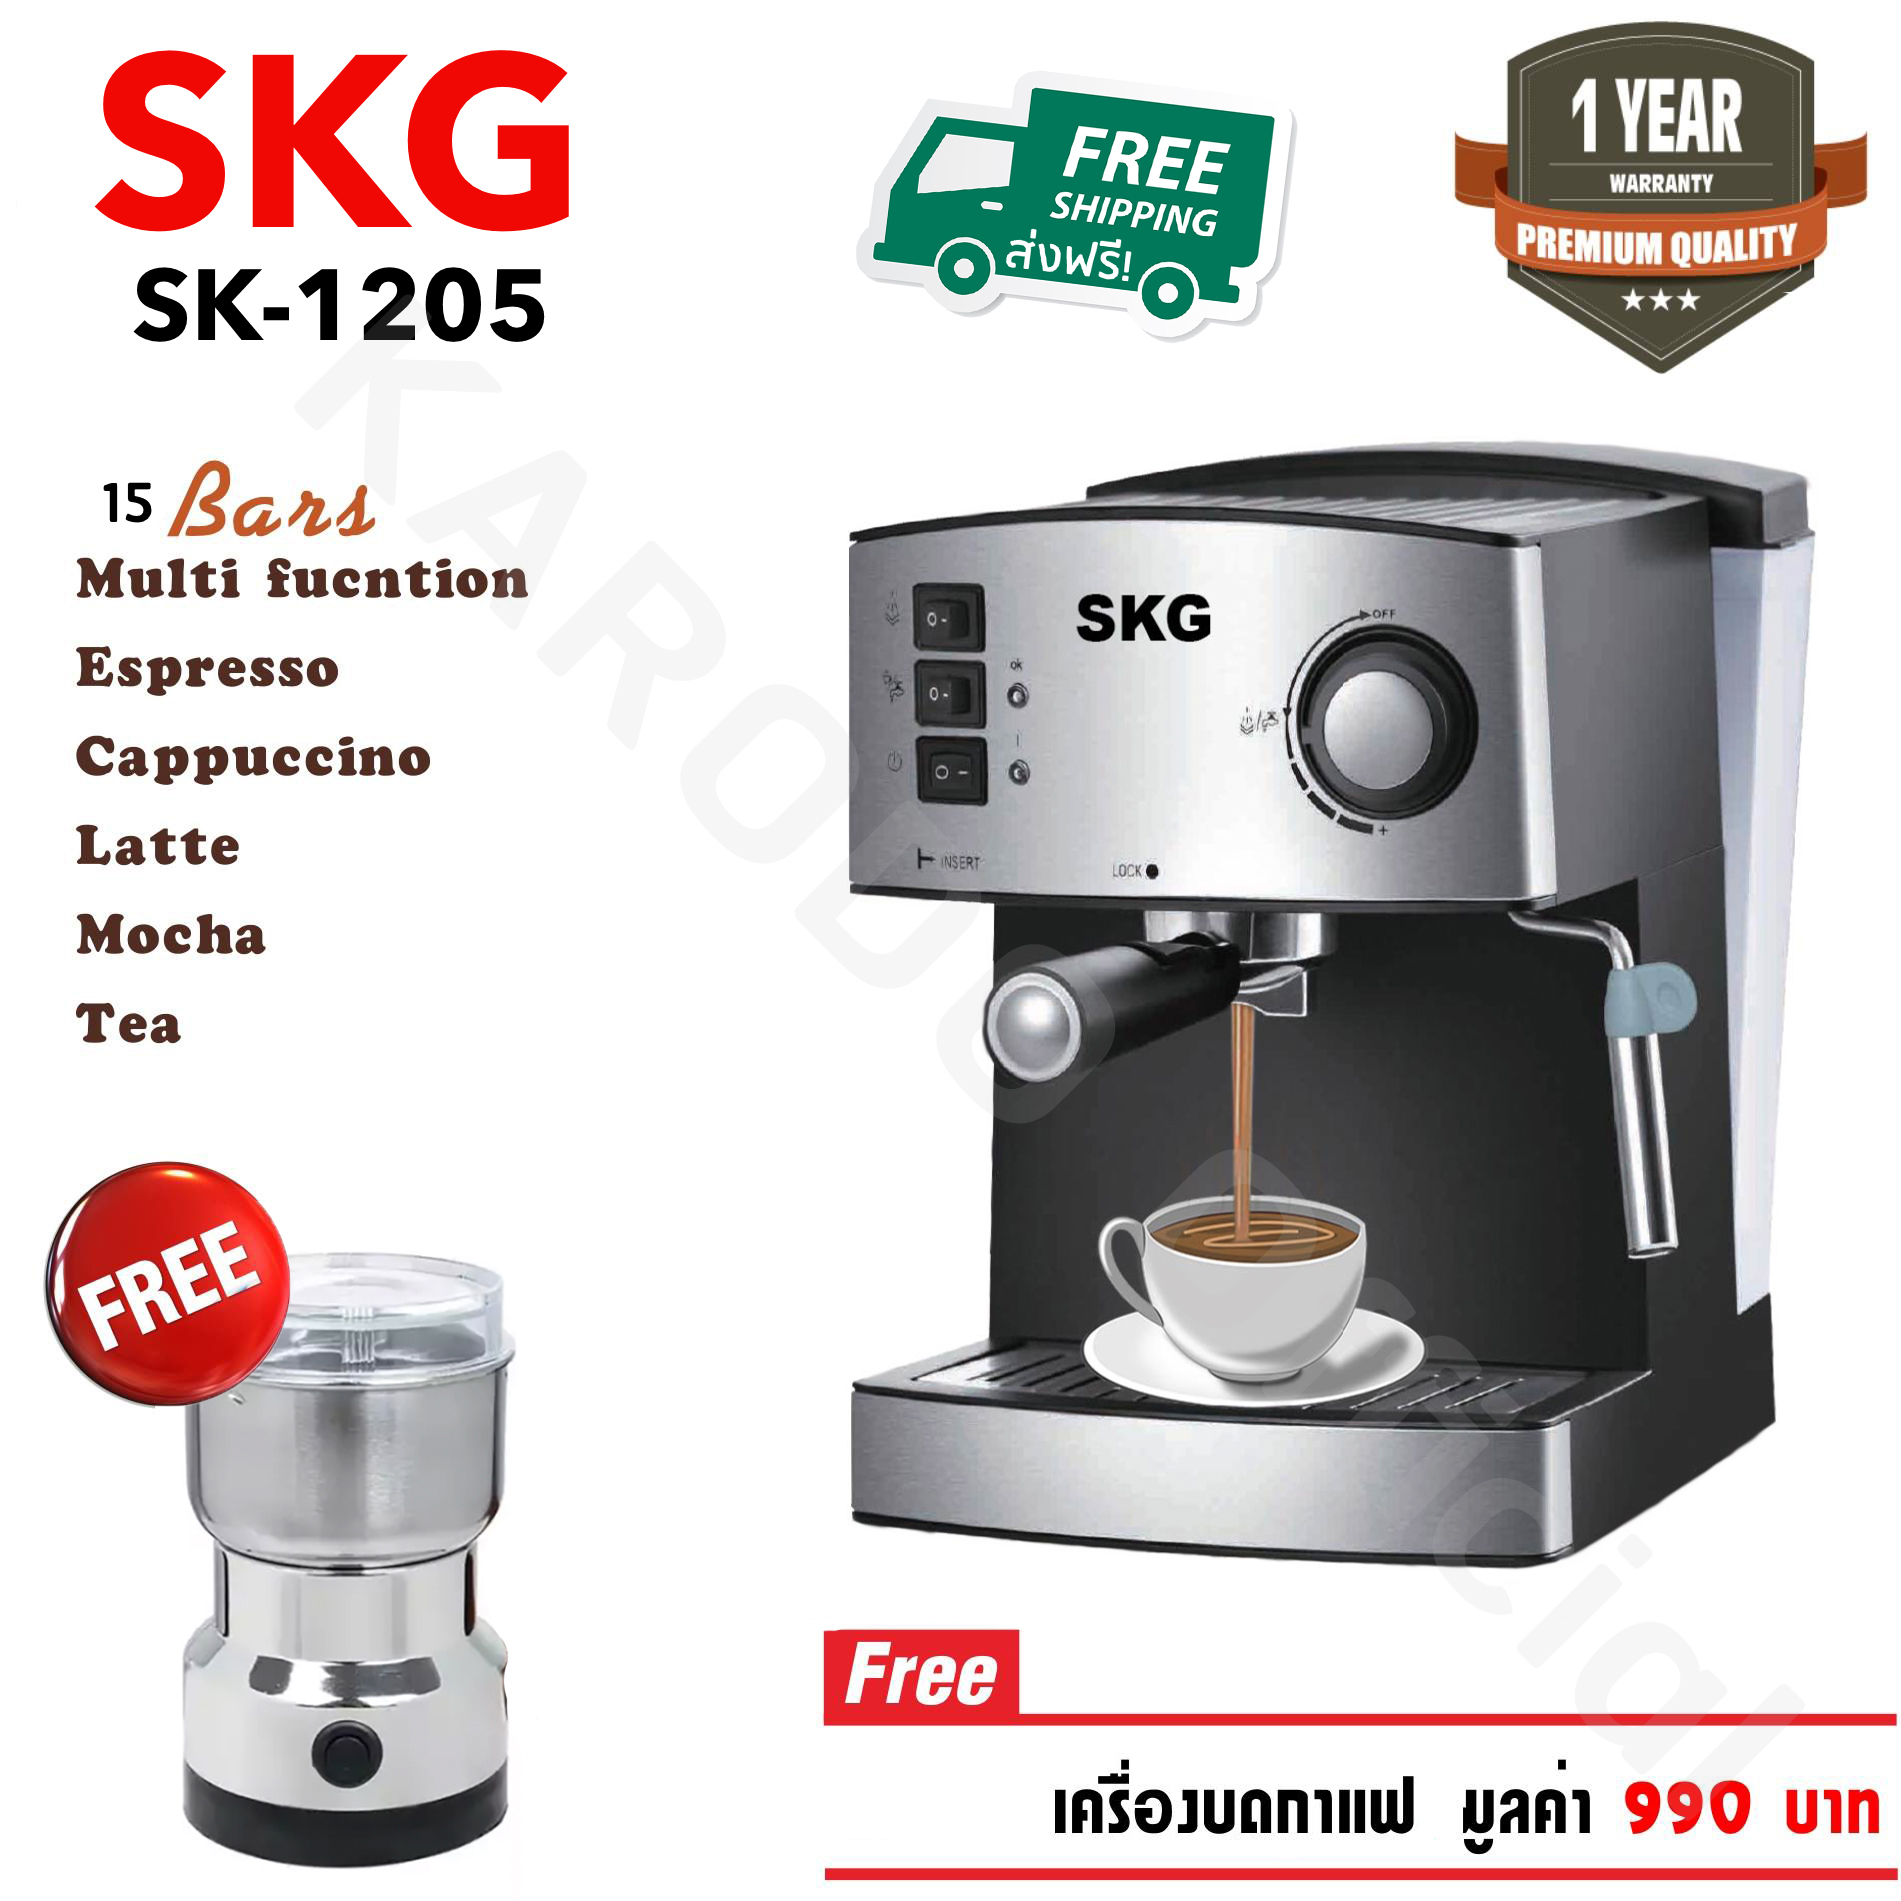 SKG เครื่องชงกาแฟสด 850W 1.6ลิตร รุ่น SK-1205 สีดำ แถมเครื่องบดกาแฟ